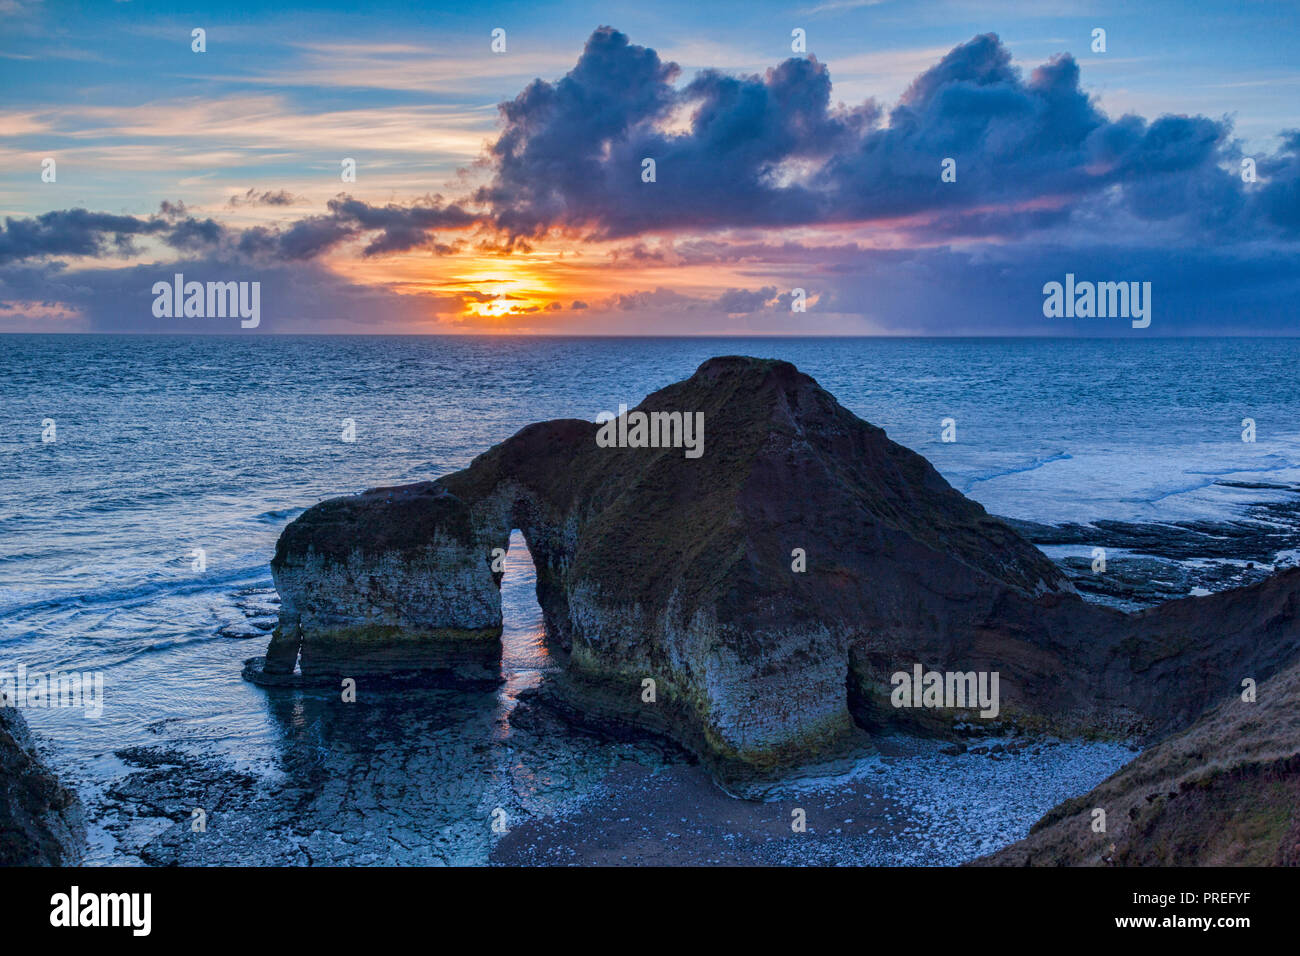 Kalkstein Formation, wie die Dinosaurier, Flamborough Head, East Yorkshire, England, UK, sunrise bekannt. Stockfoto